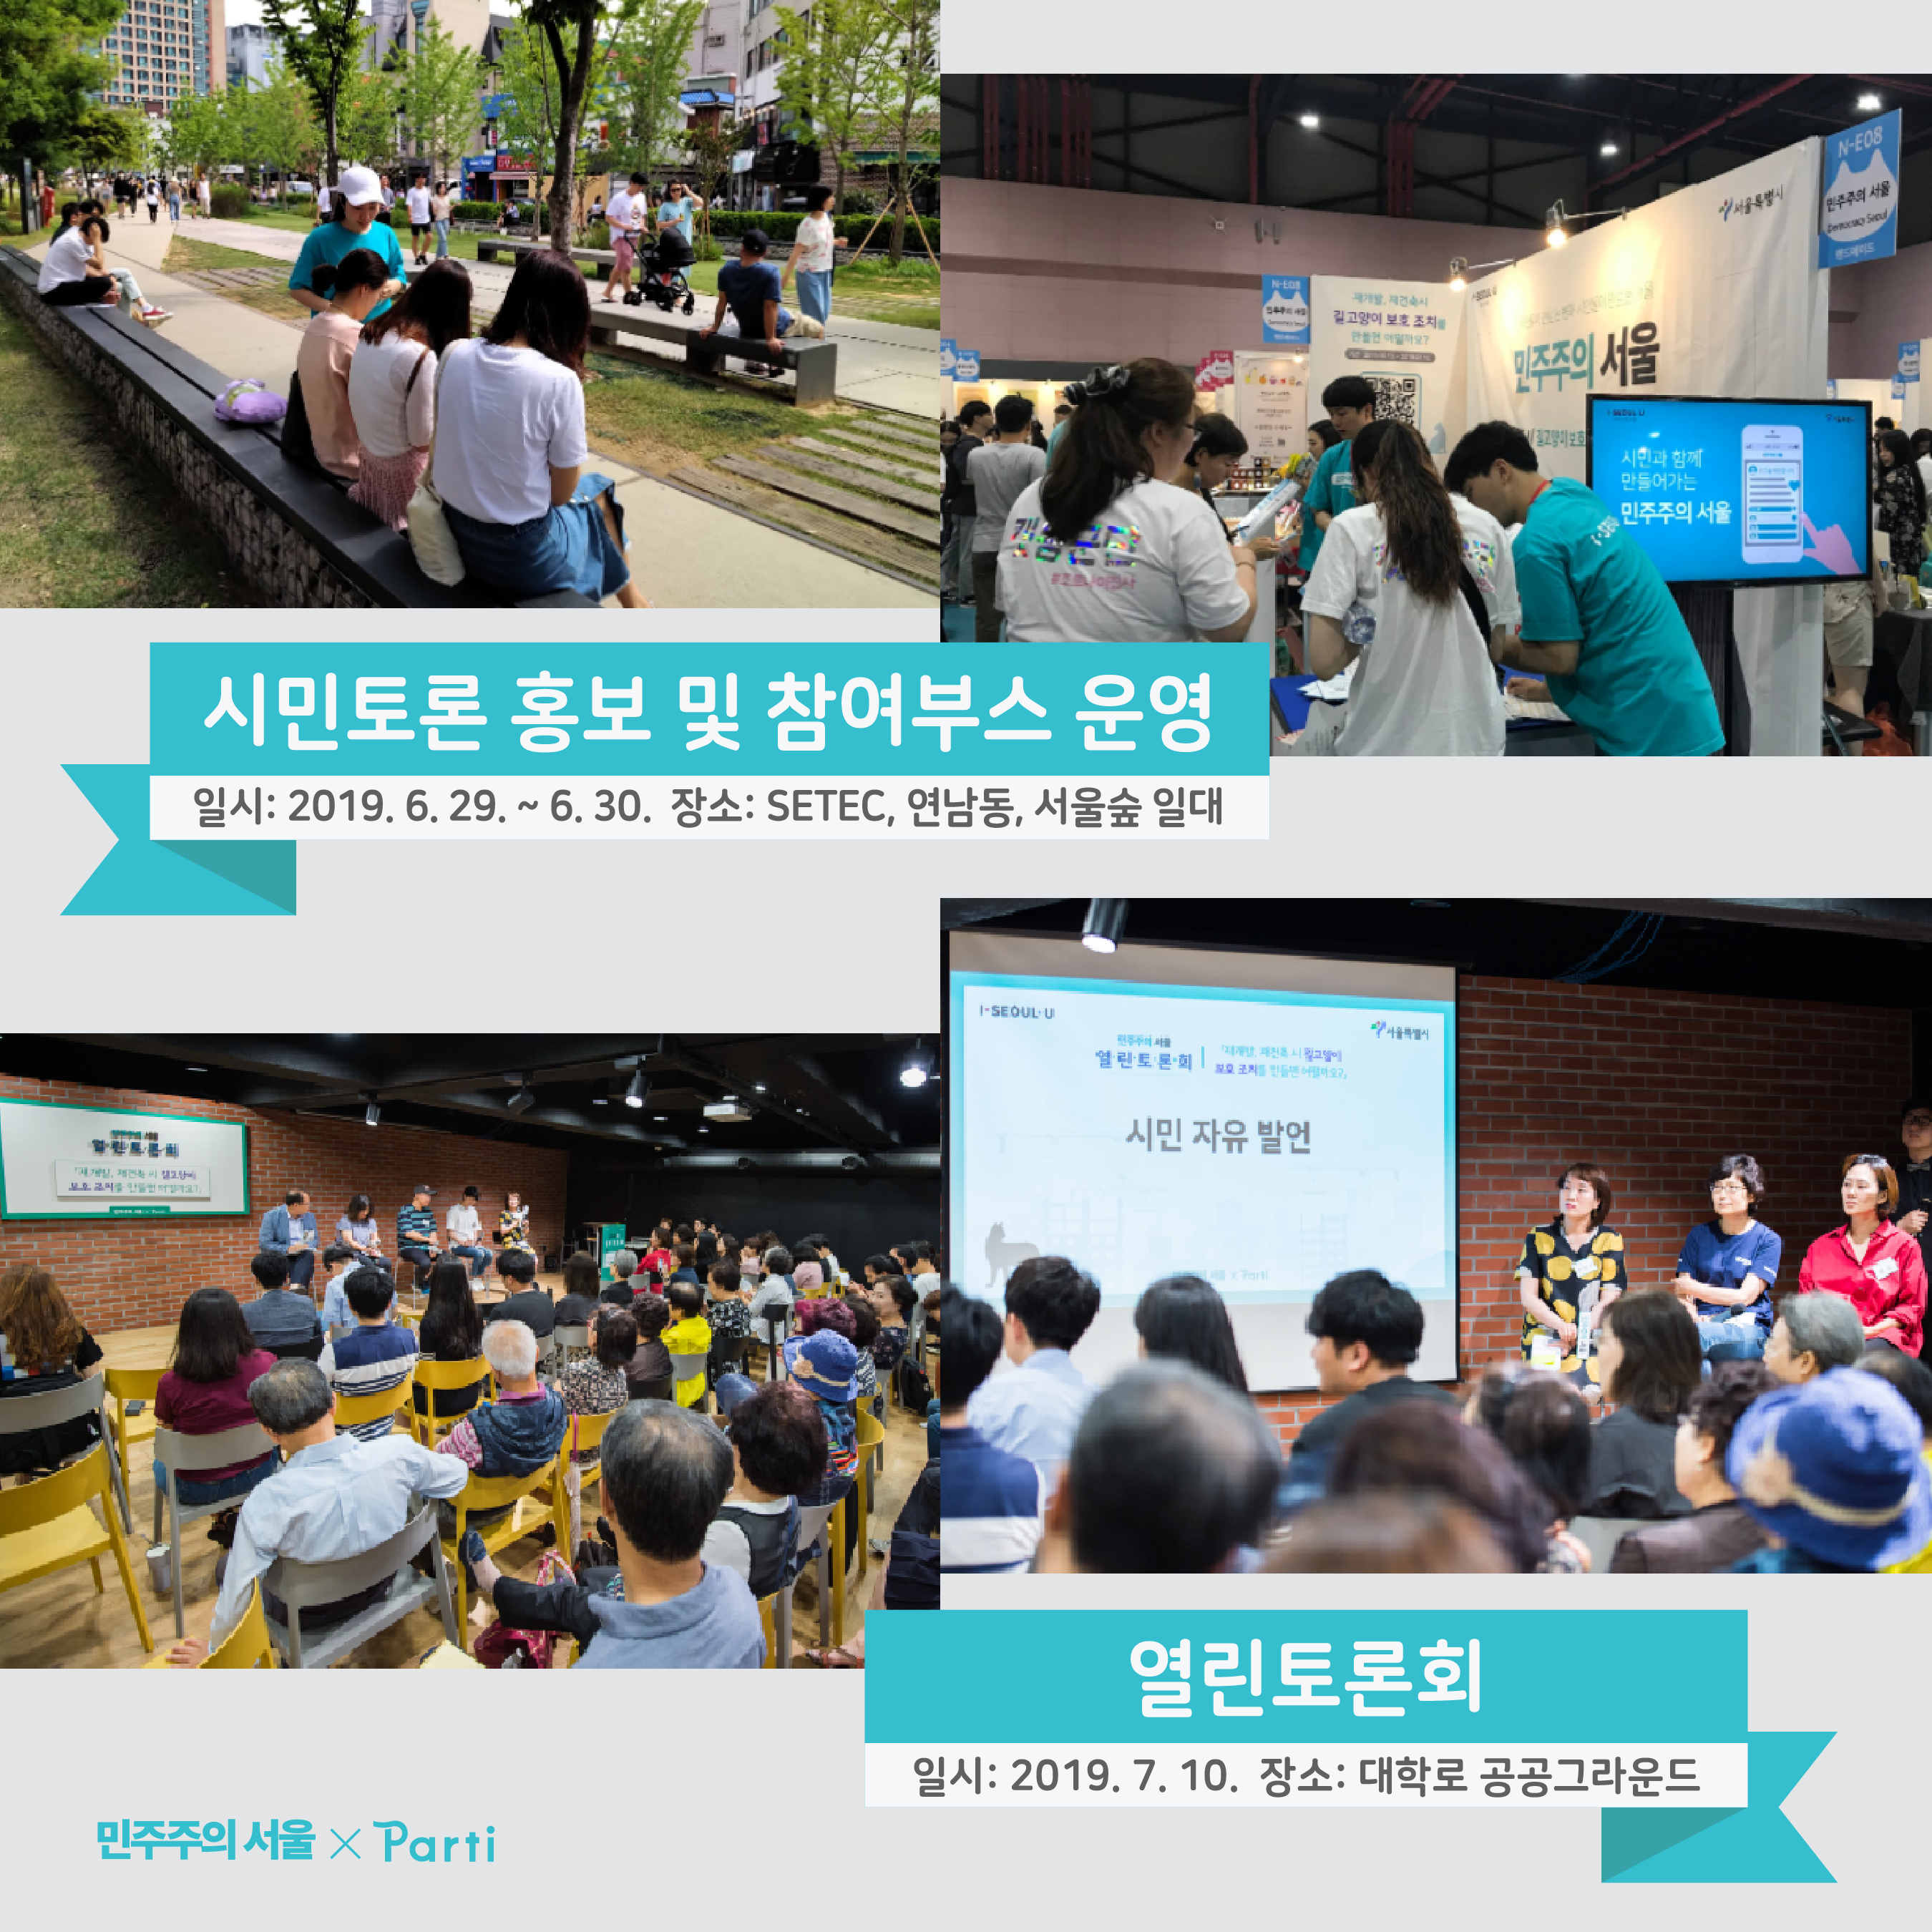 이번 시민토론에는 2019년 6월 29일부터 30일까지 시민토론 홍보 및 참여부스를 SETEC, 연남동, 서울숲 일대에서 운영했고, 오프라인에서 2019년 7월 10일 열린토론회도 진행했습니다